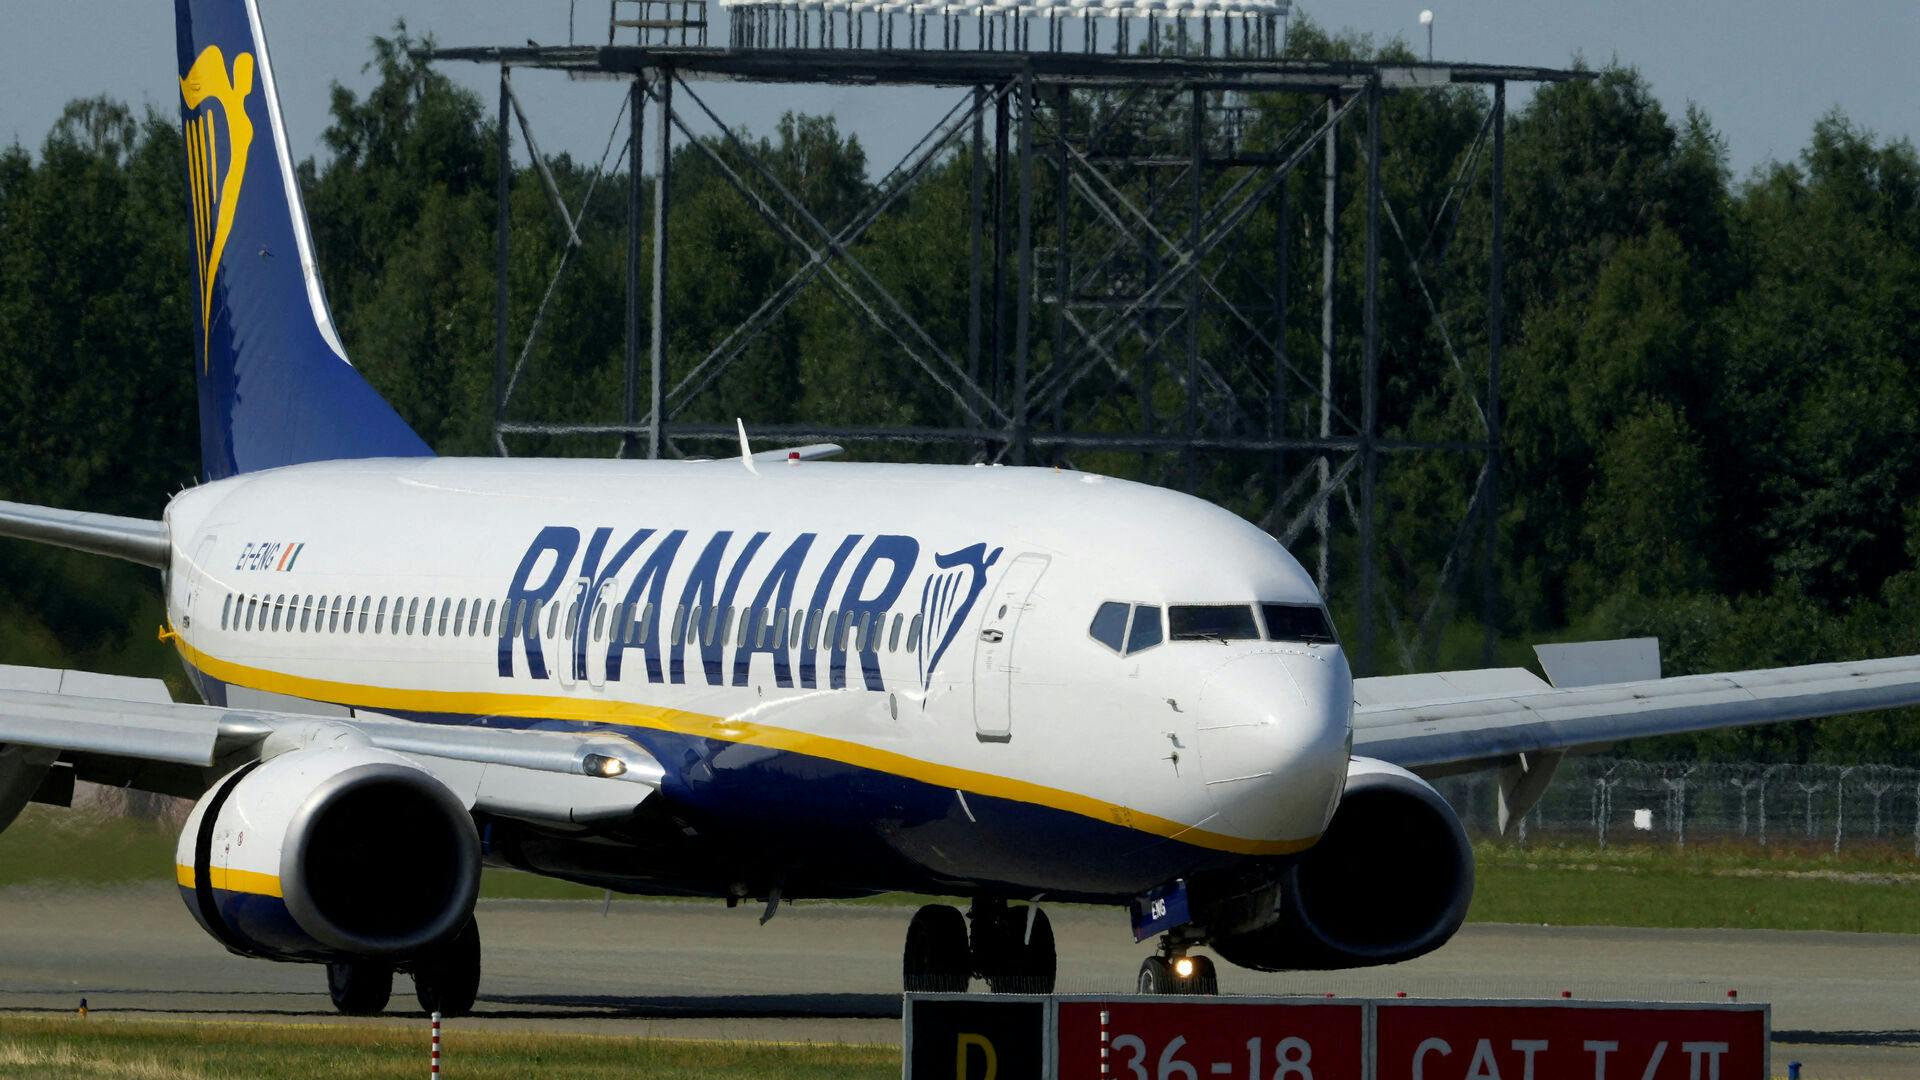 Ryanairs overskud i tredje kvartal er faldet med 93 procent til 14,8 millioner euro, viser regnskab.